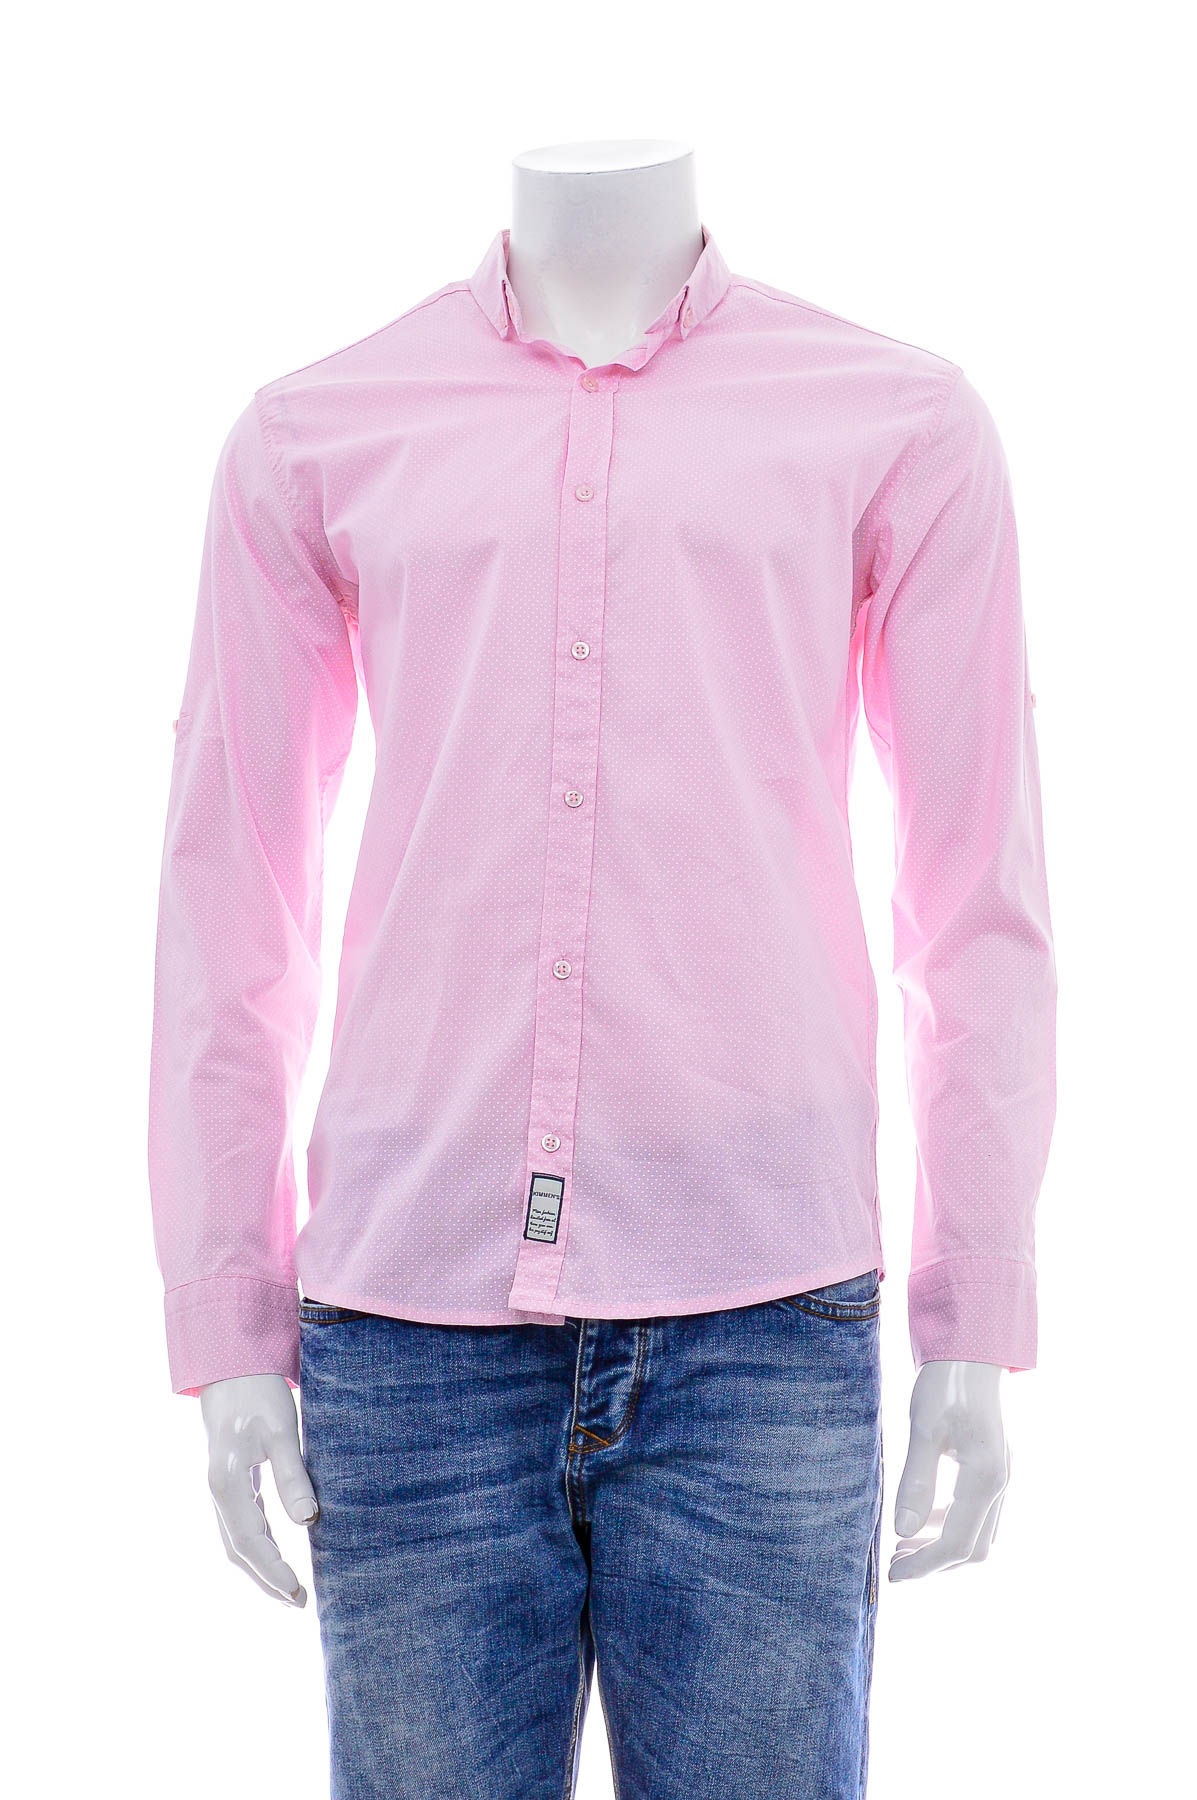 Ανδρικό πουκάμισο - KIMMEN'S - 0